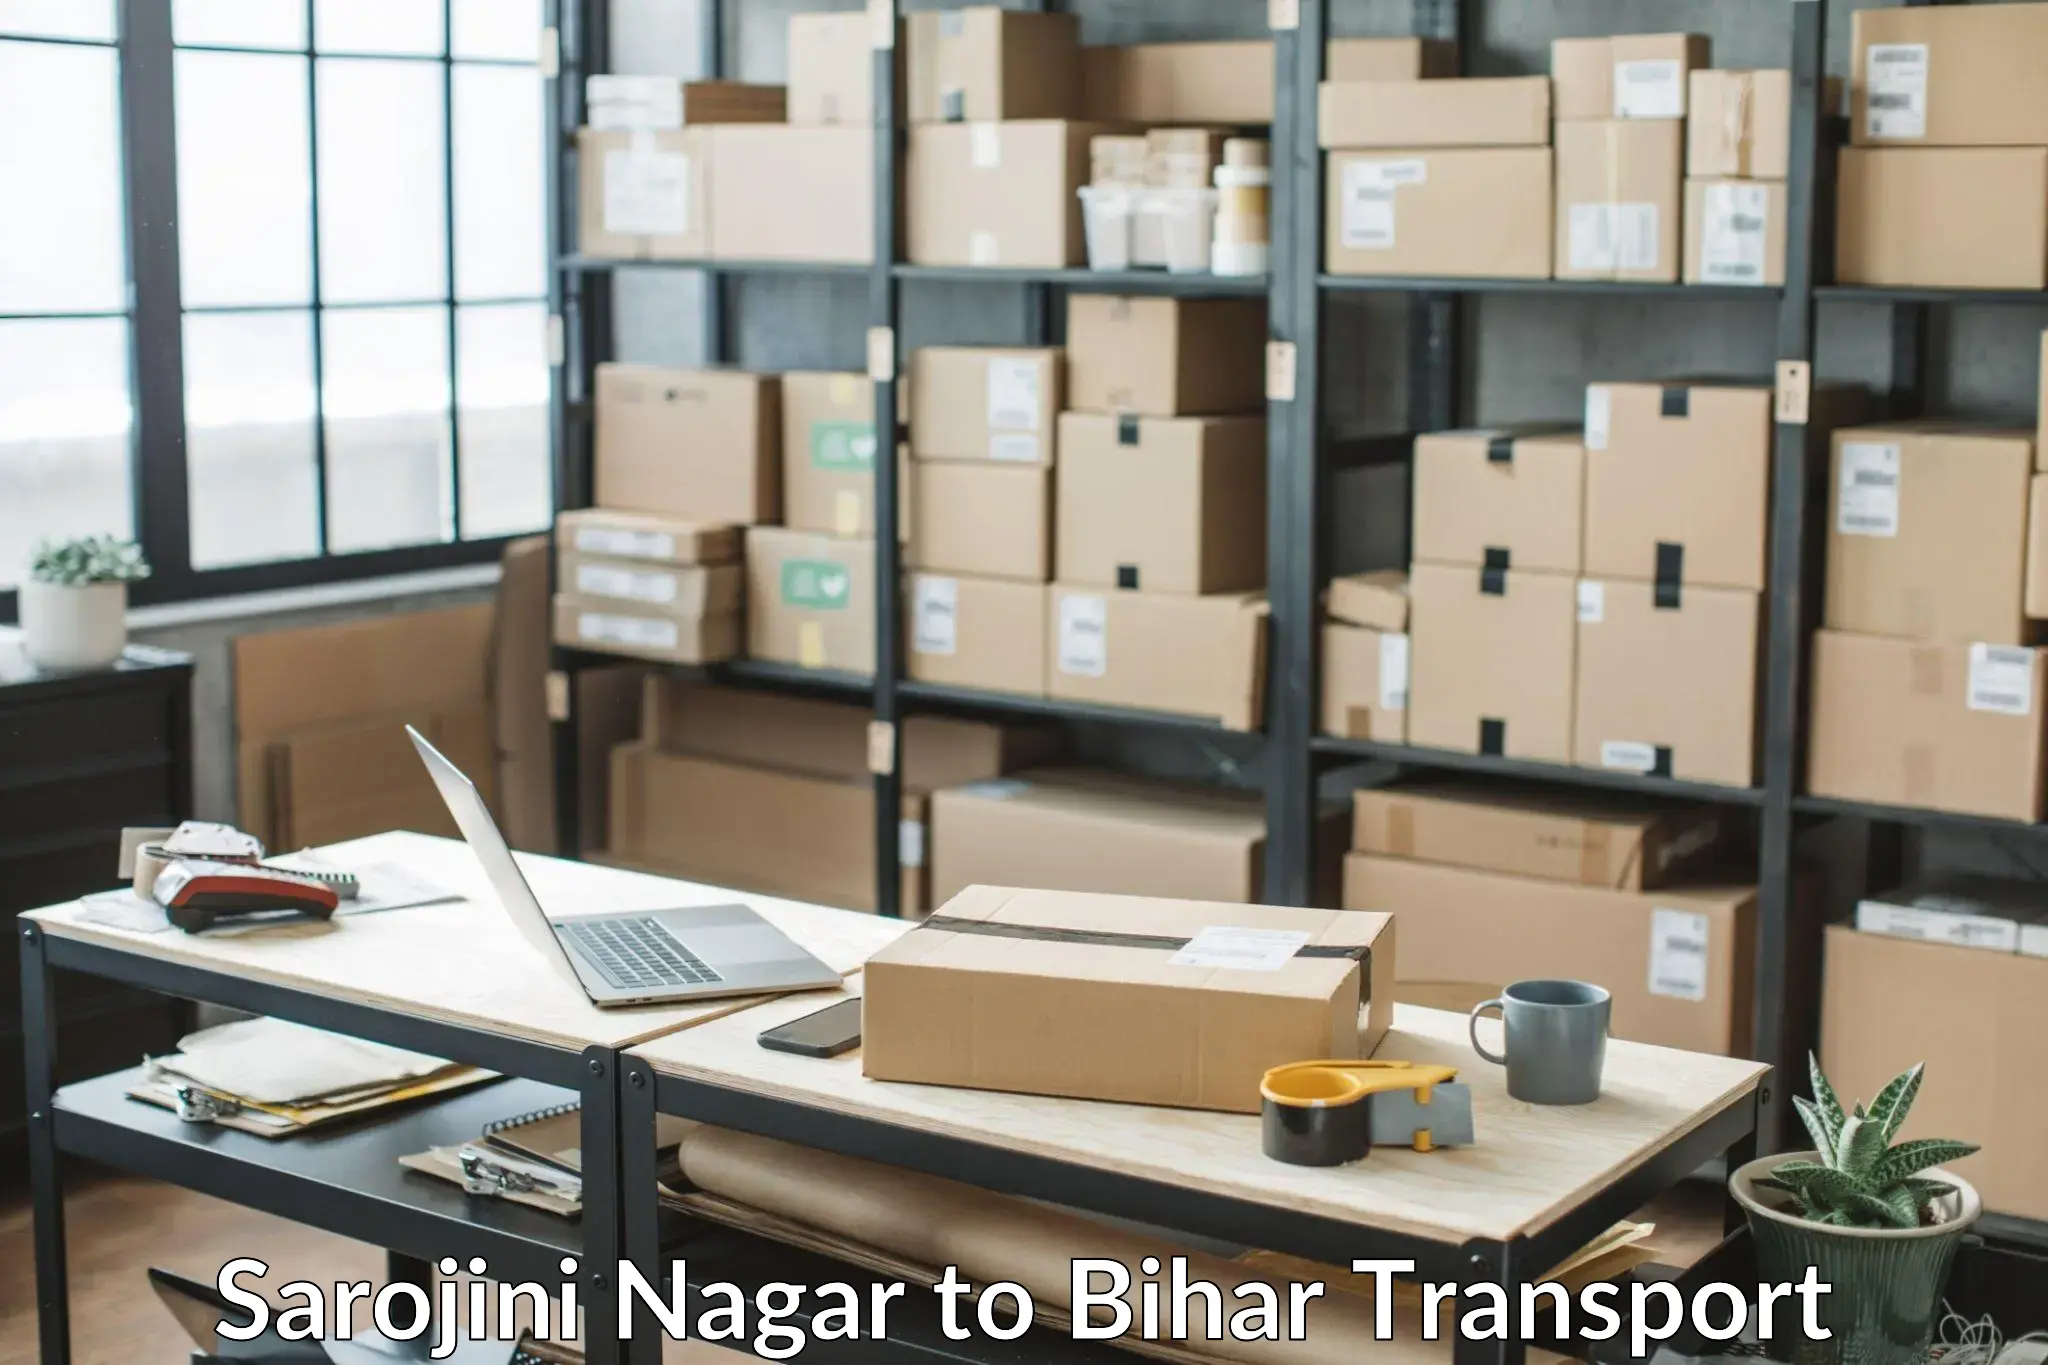 Container transport service Sarojini Nagar to Bettiah